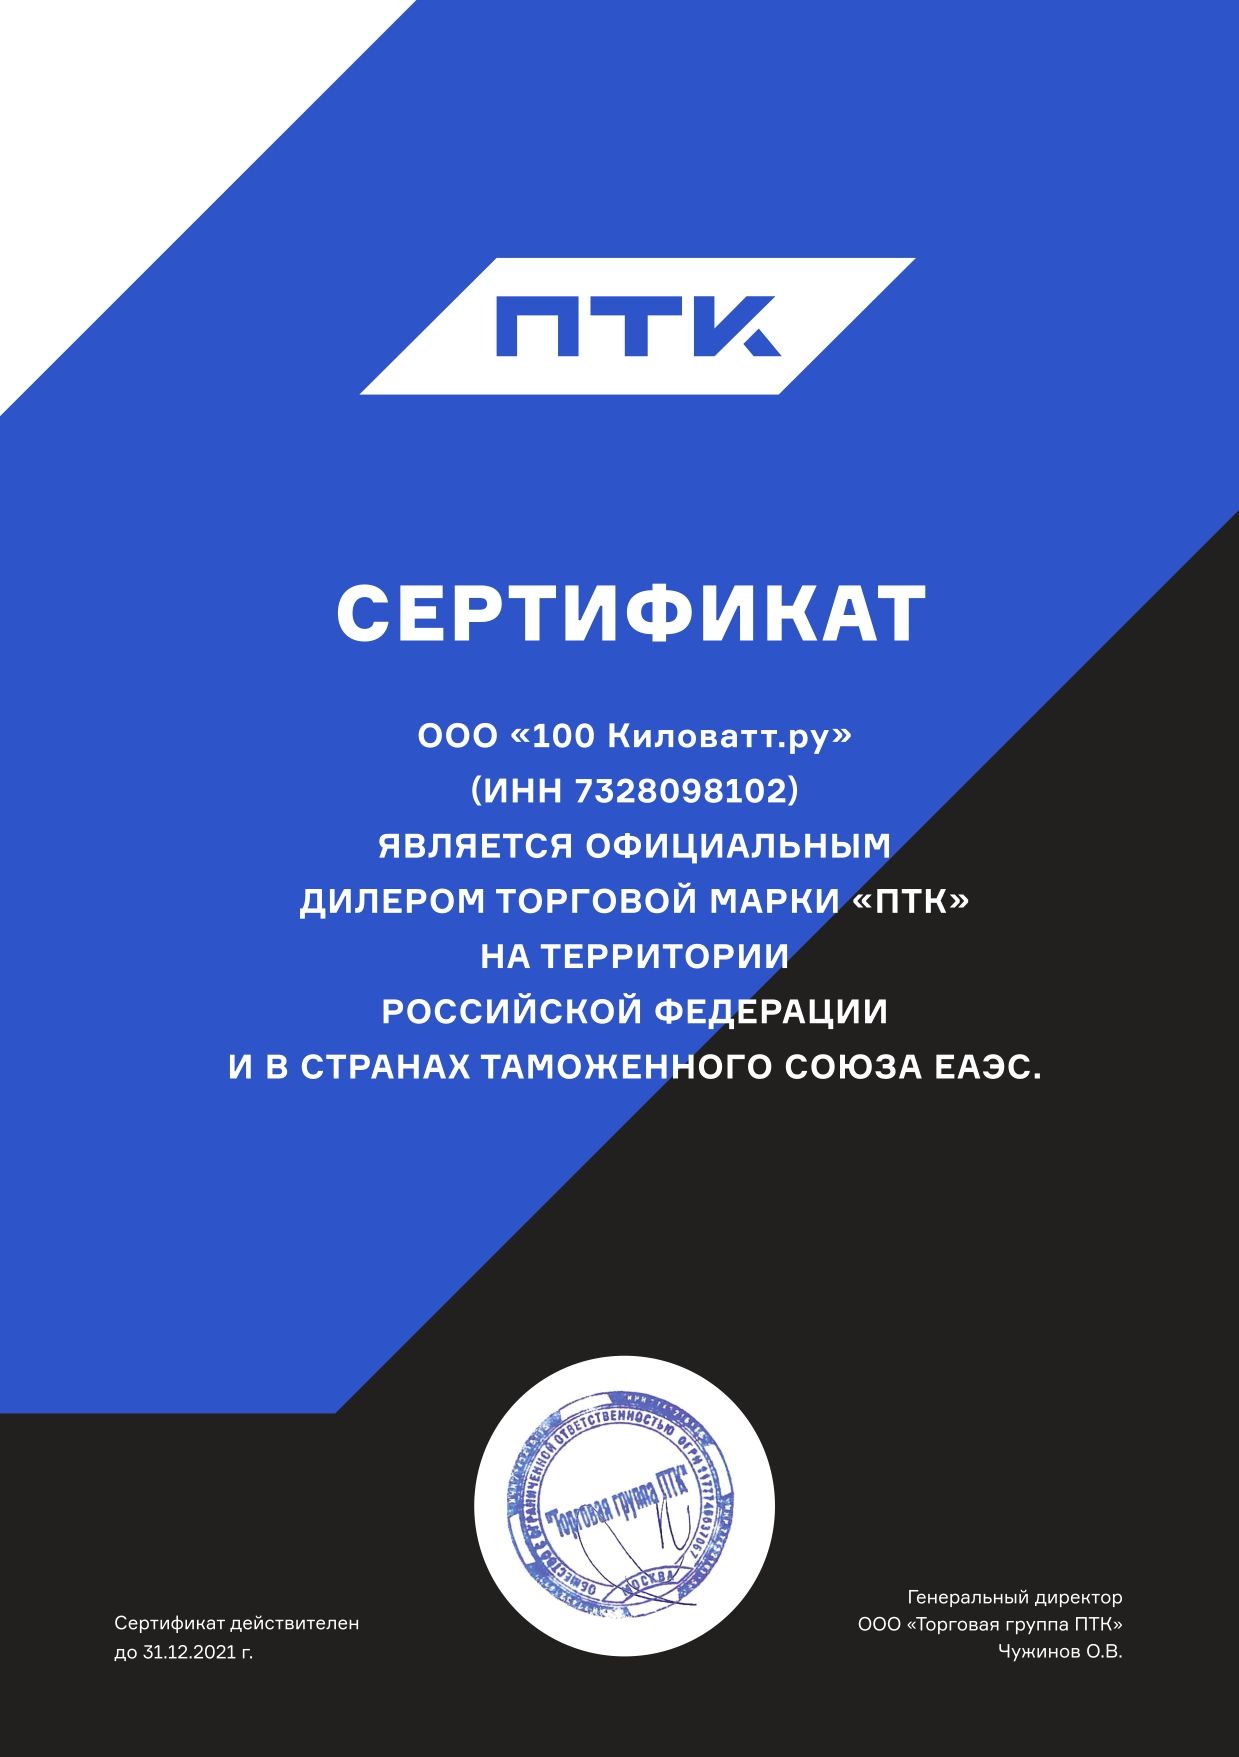 ПТК - Сертификат дилера